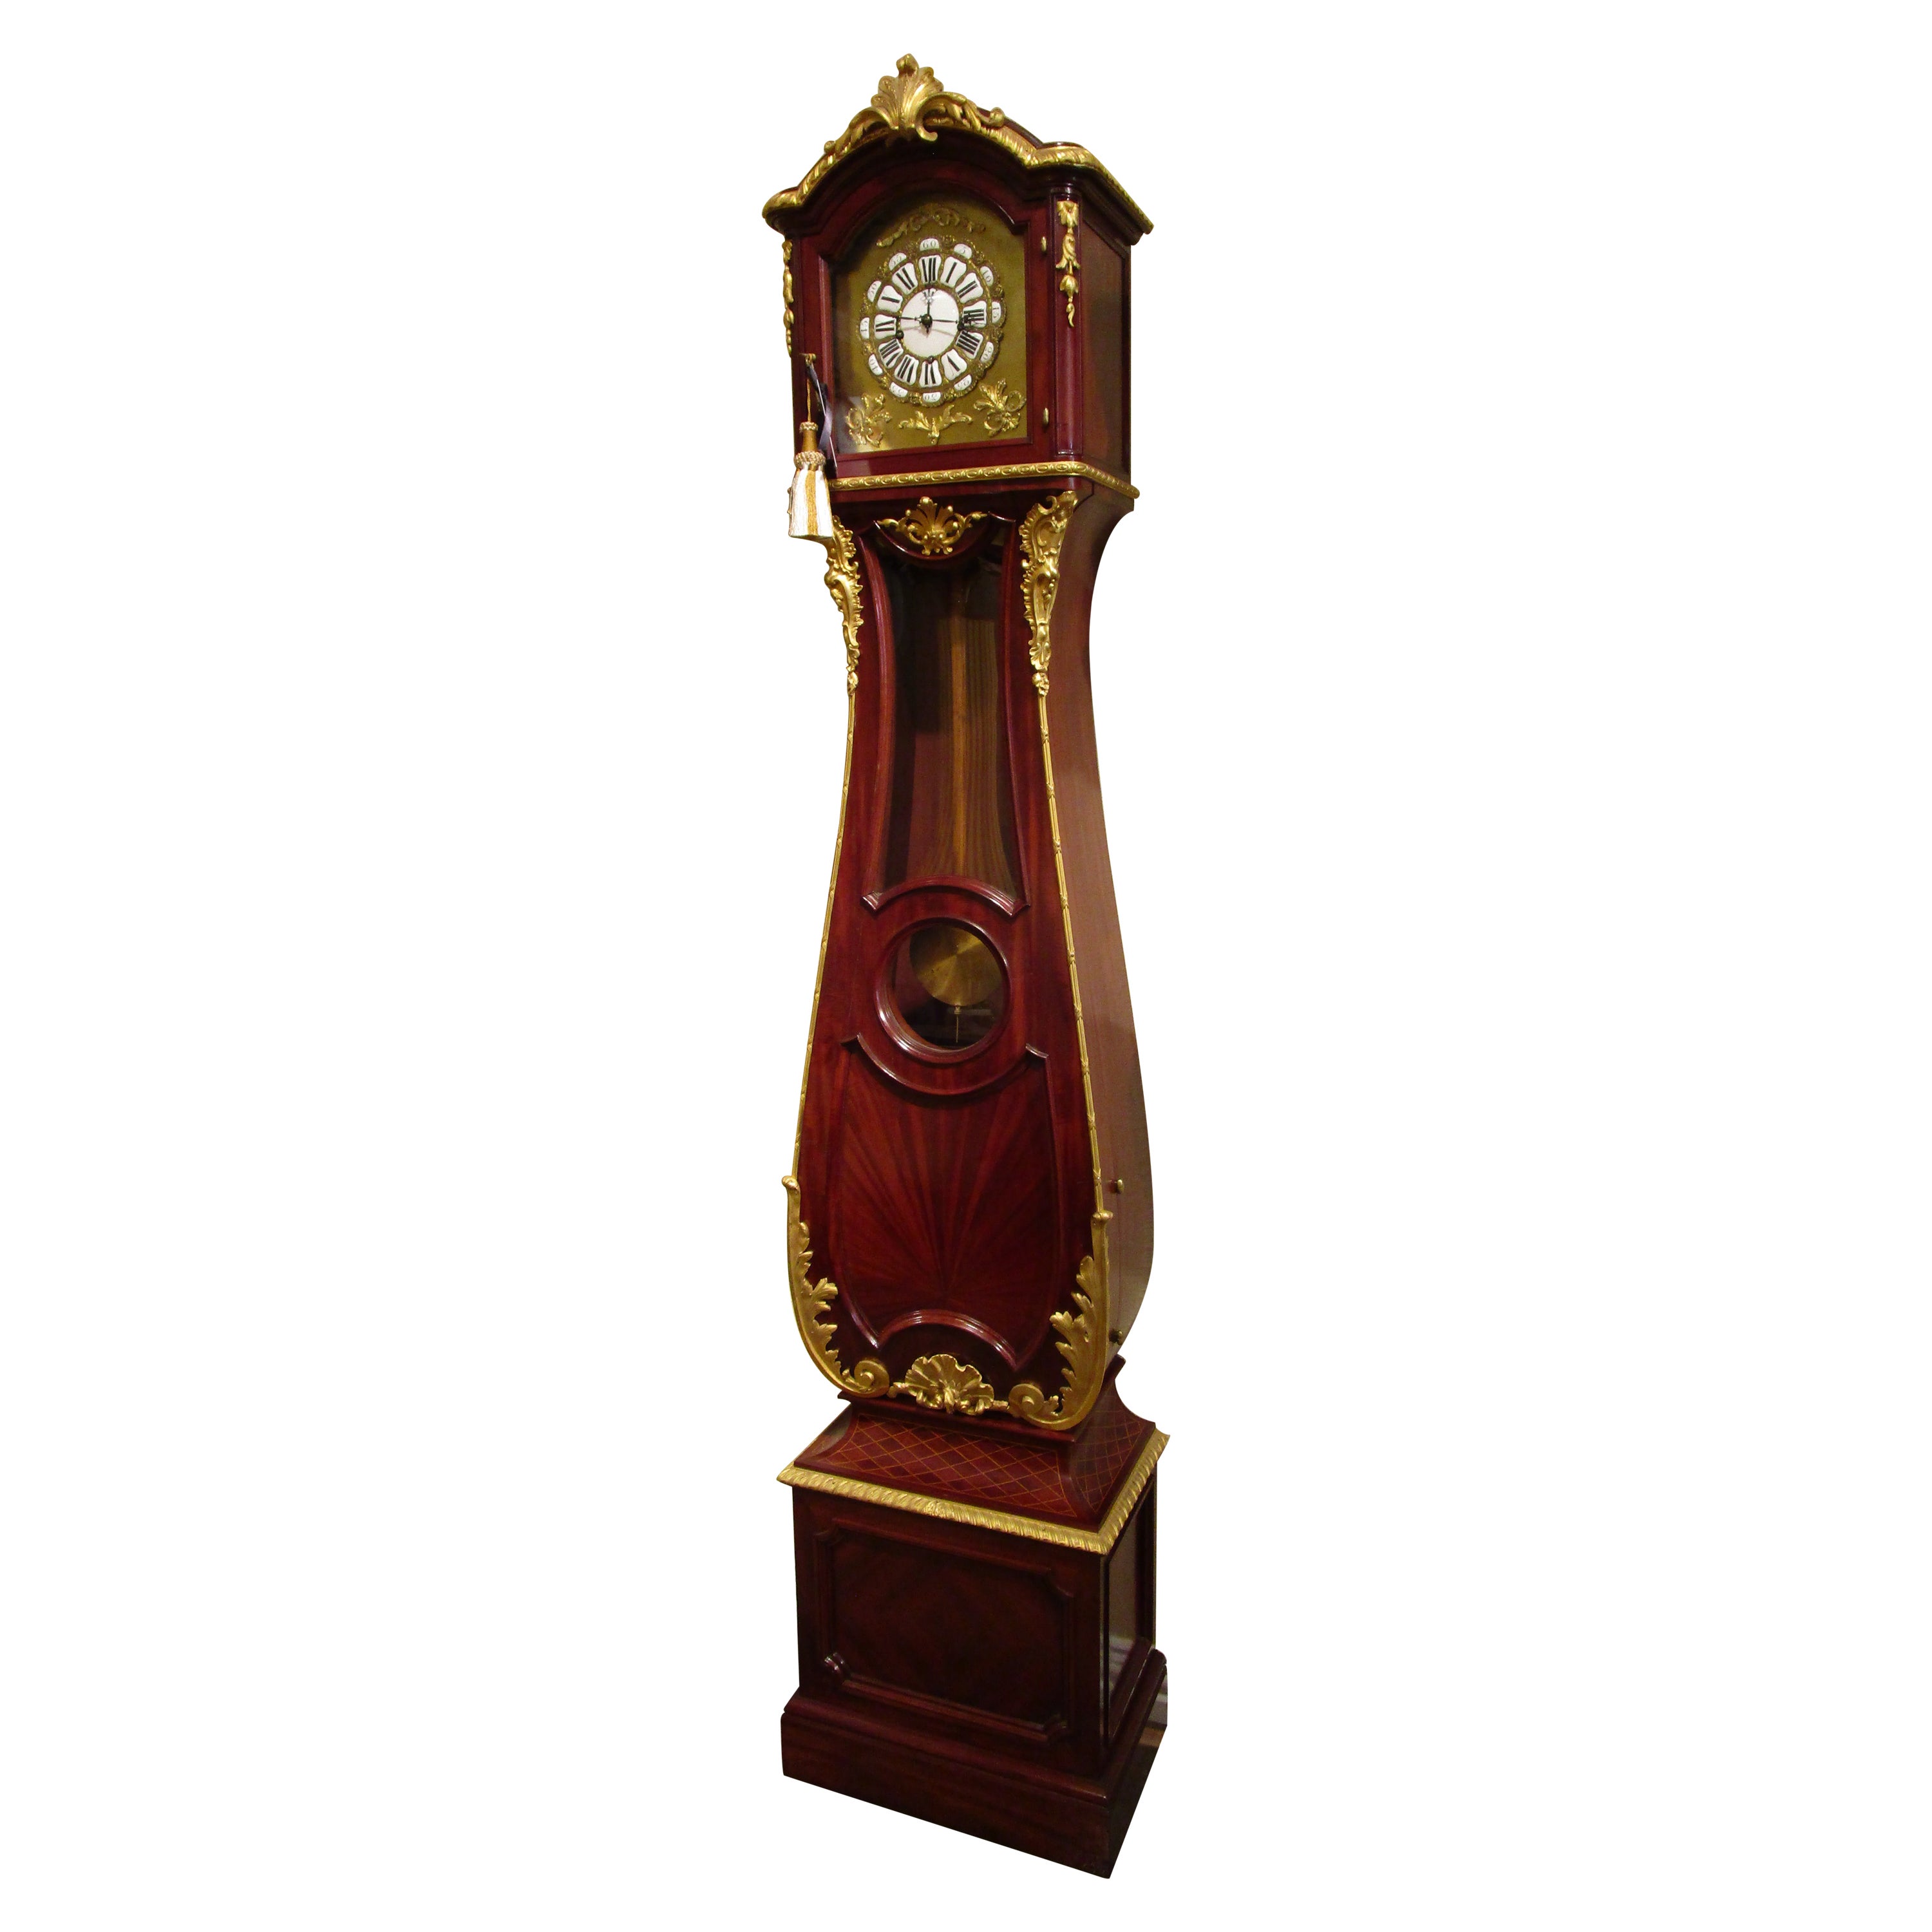 A  A.I.C., 19e siècle, acajou français  Horloge de grand-père incrustée de parquet. Bronze doré